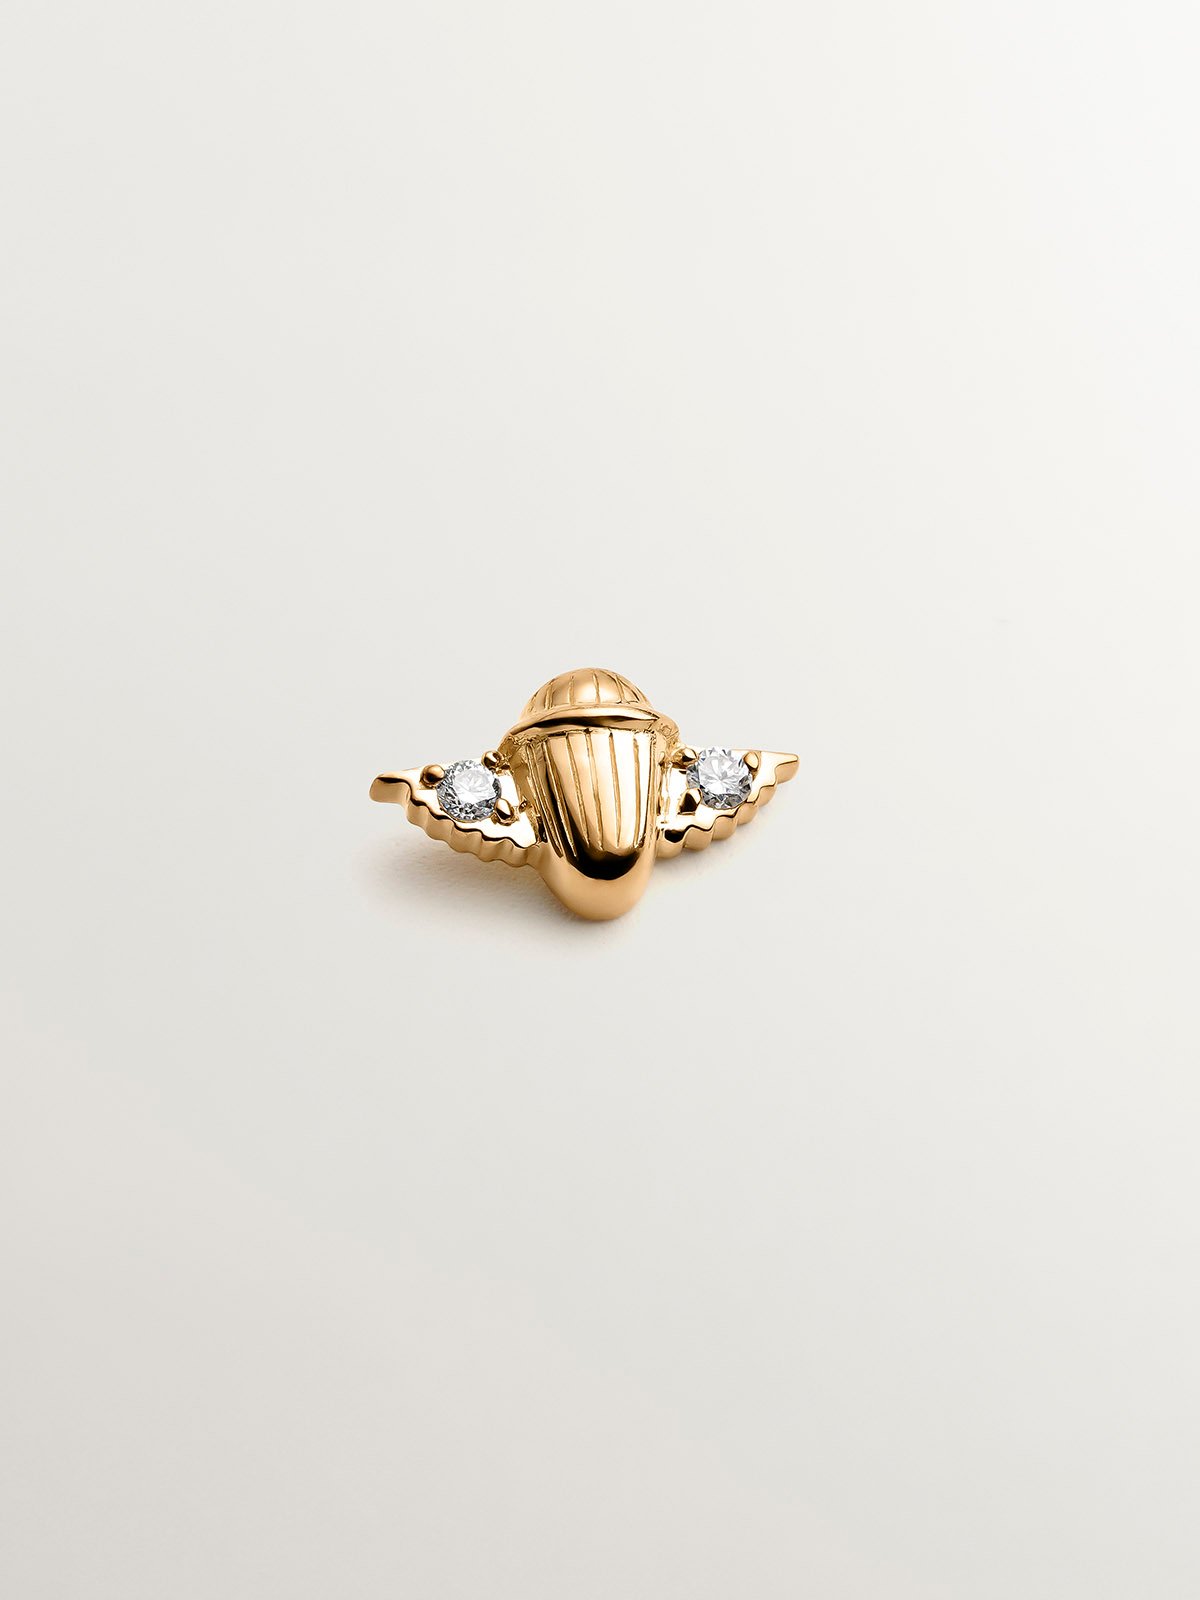 Piercing en or jaune 18K avec des diamants et en forme de scarabée